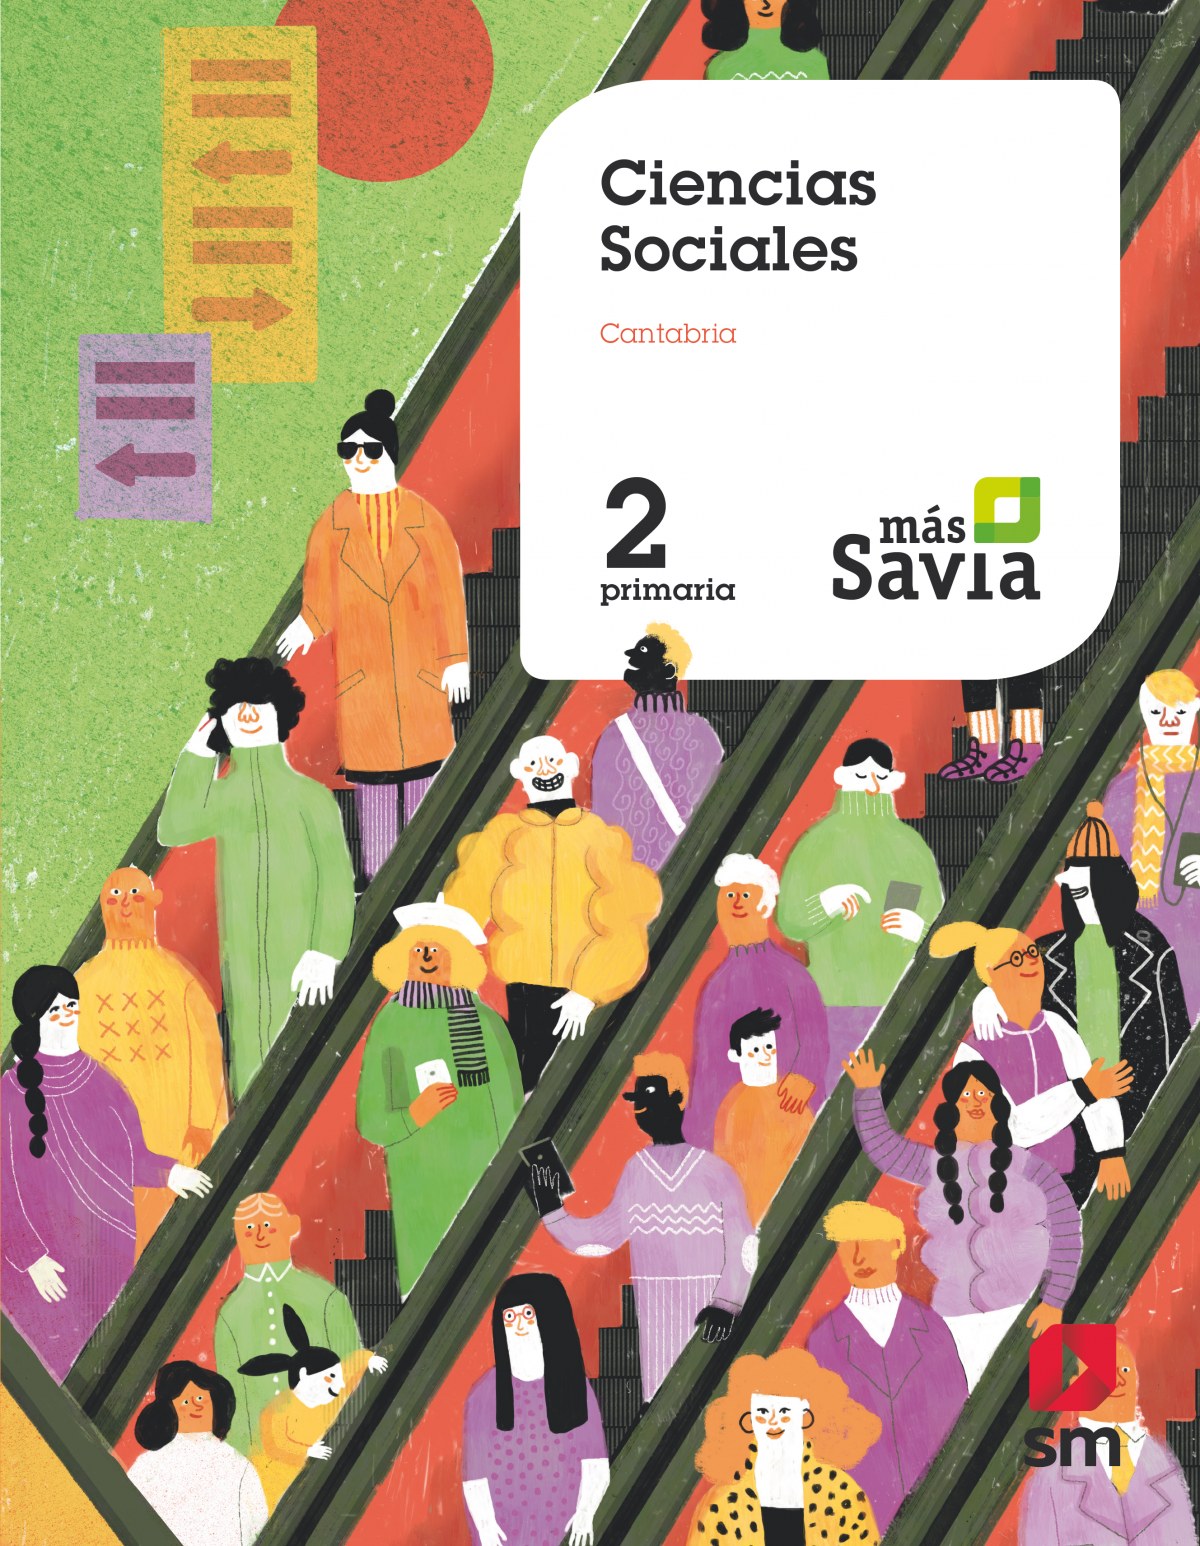 Ciencias sociales 2ºprimaria. mÁs savia. cantabria 2019